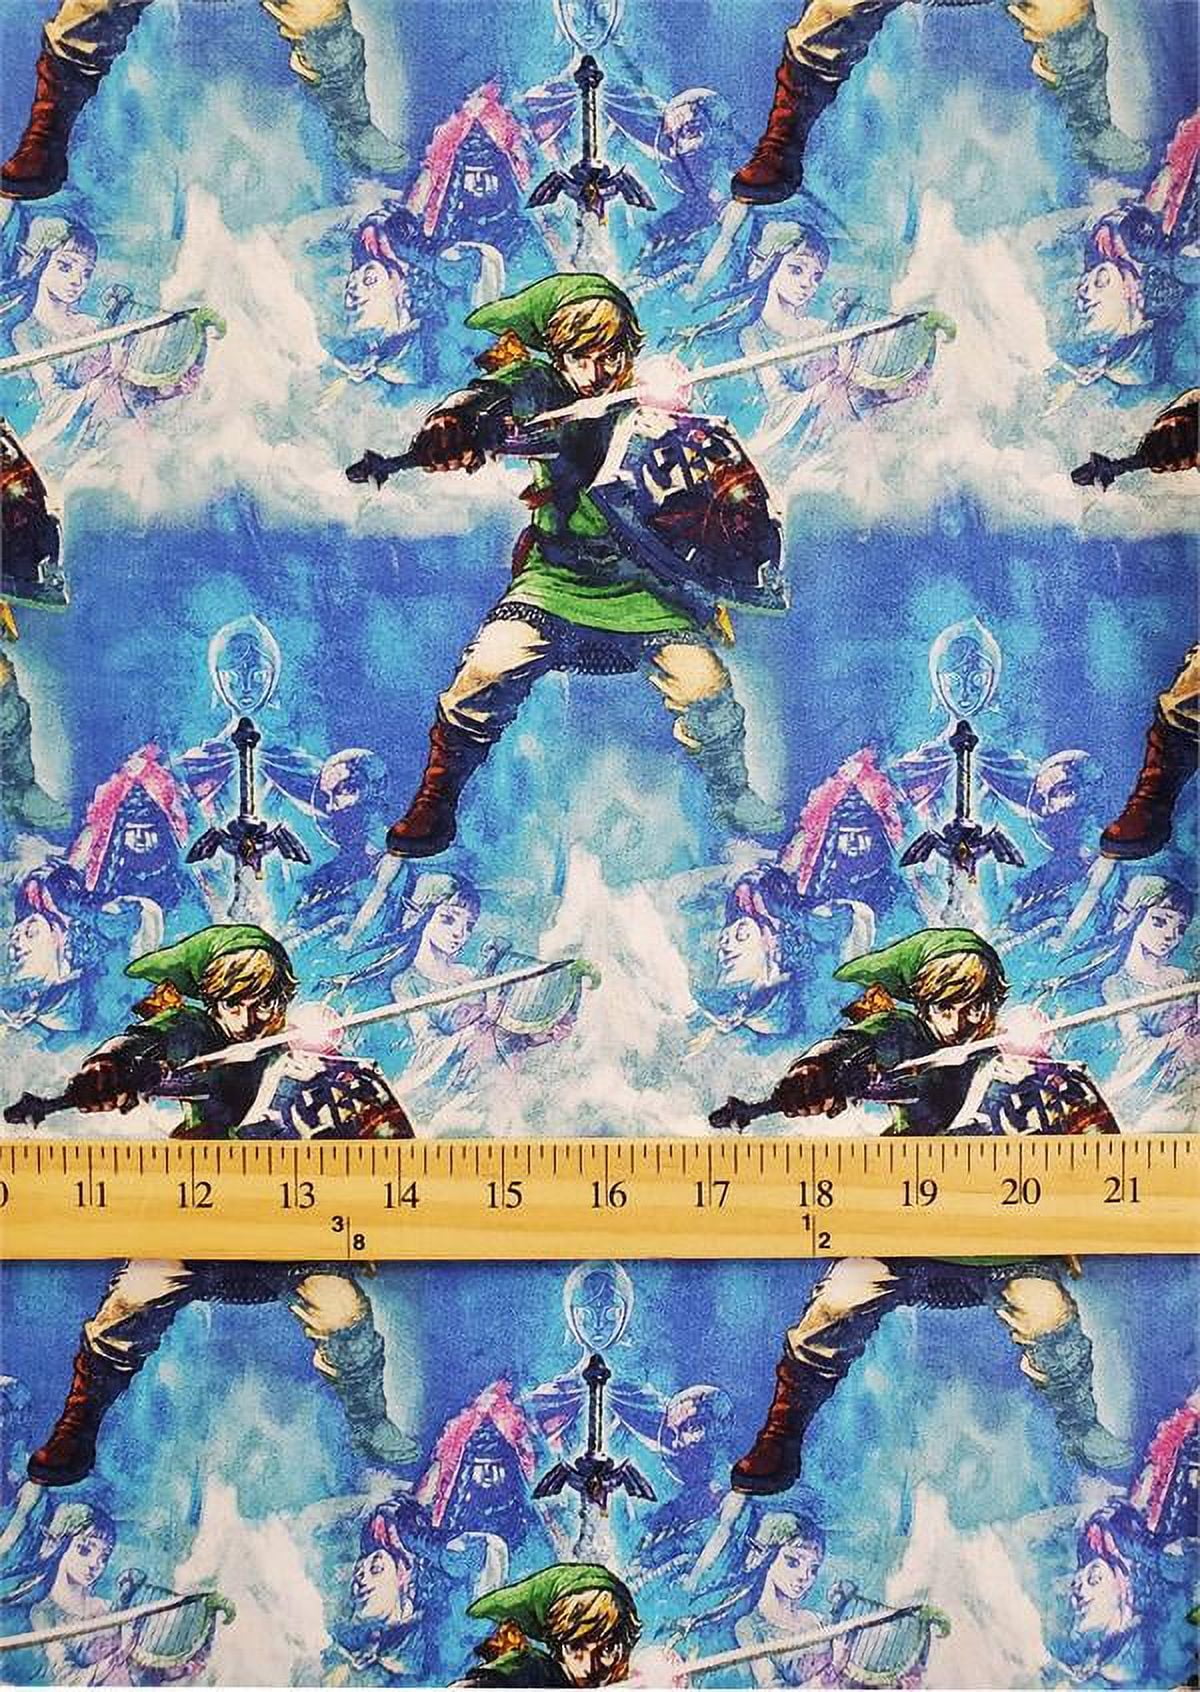 100+] The Legend Of Zelda Iphone Wallpapers